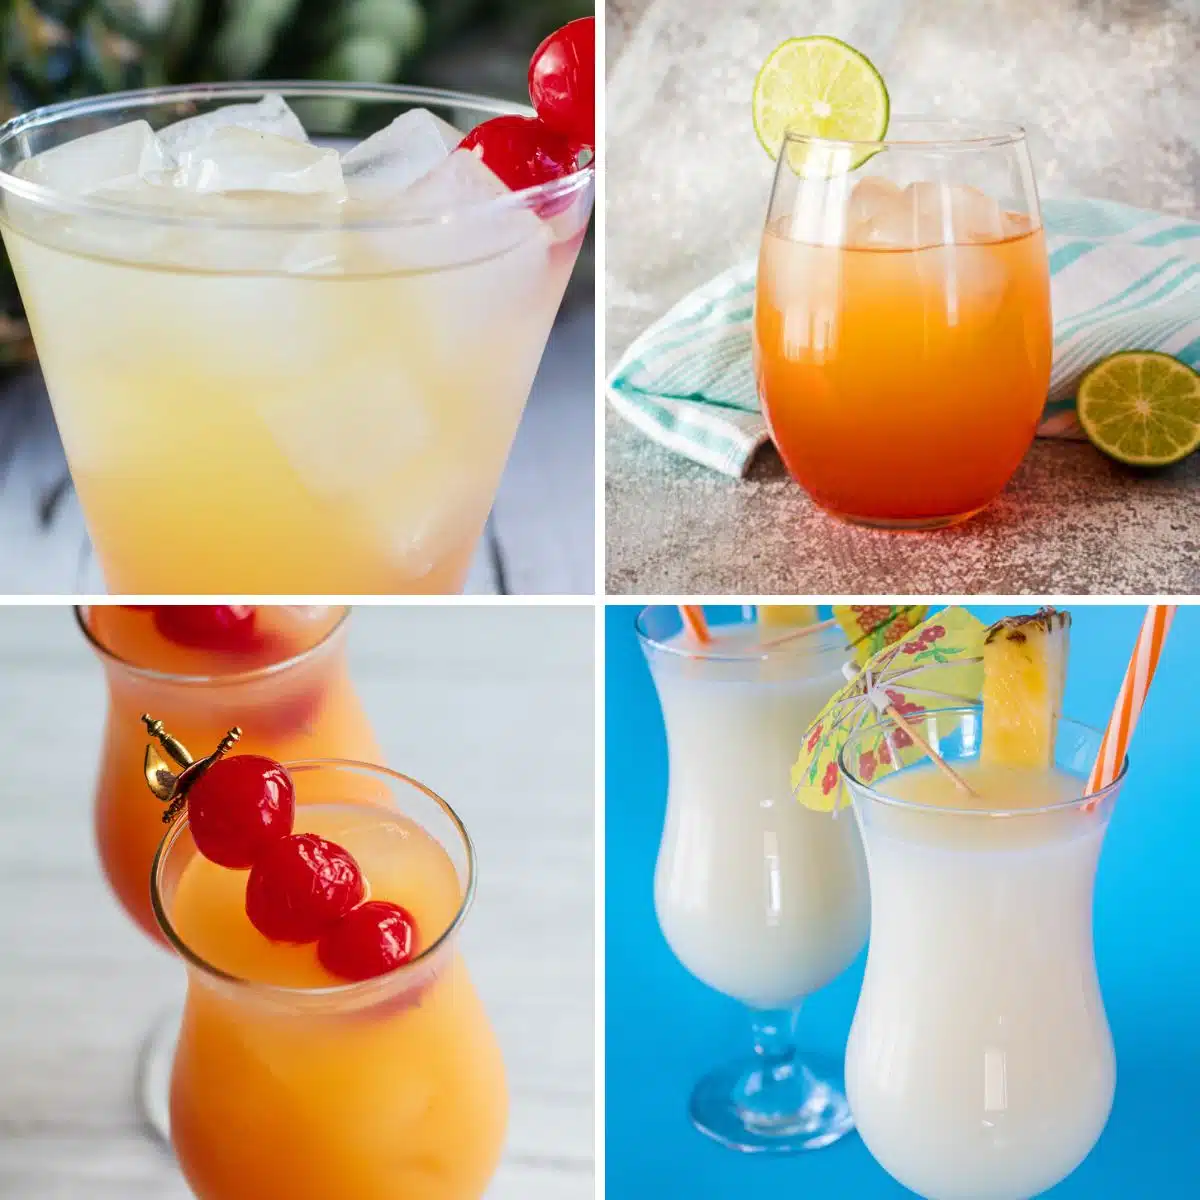 Kvadratna podijeljena slika koja prikazuje različite koktele s rumom Malibu.